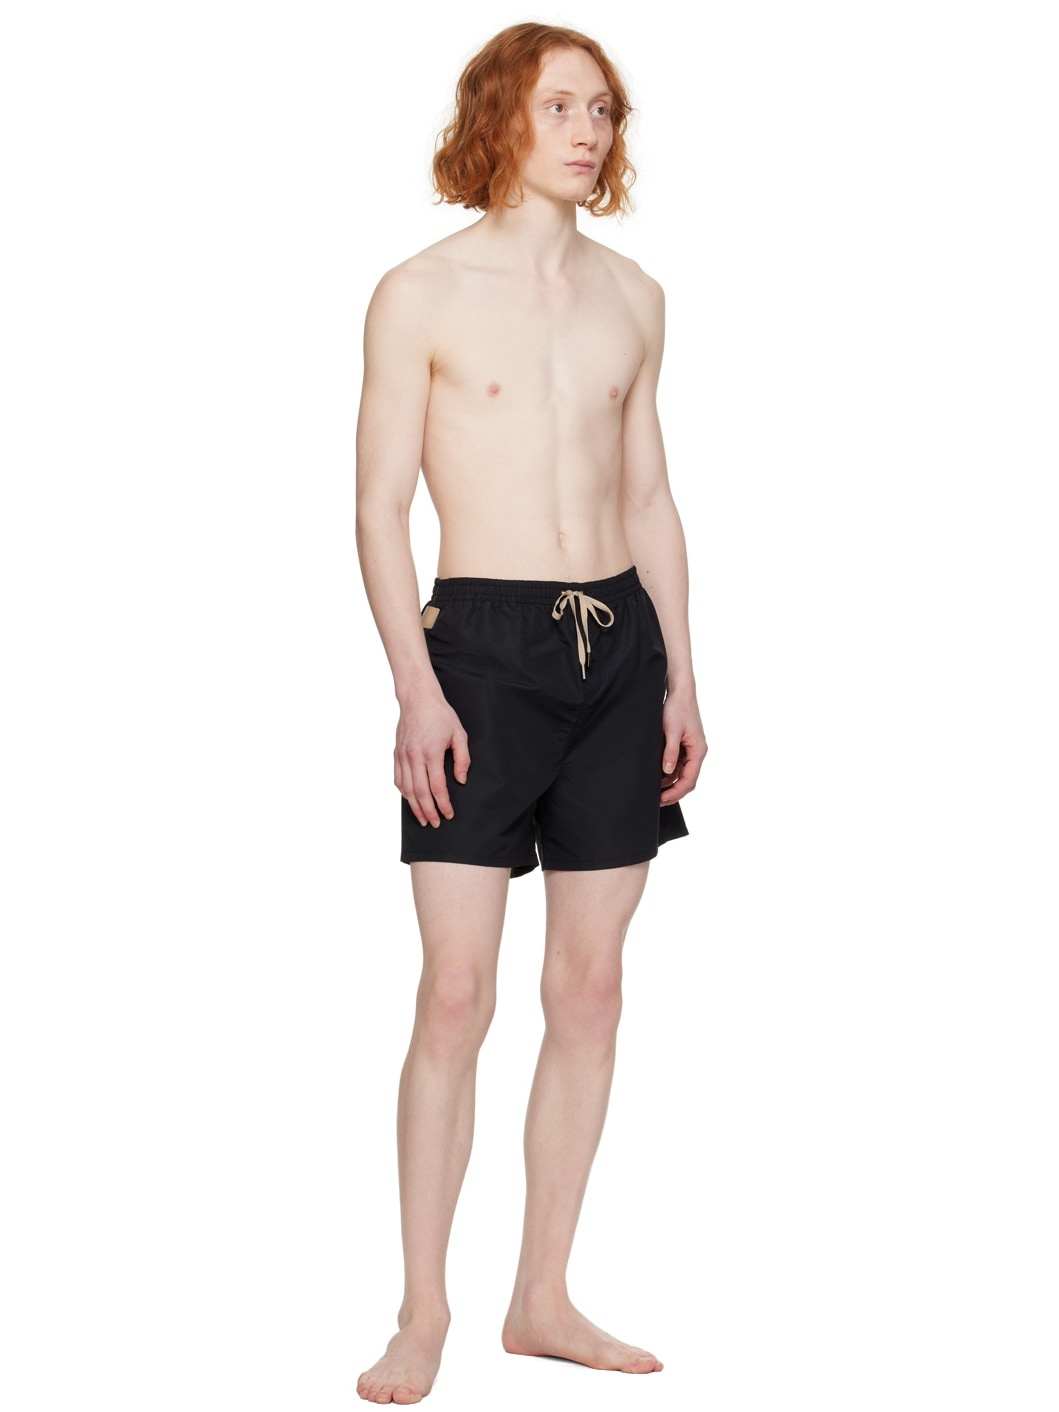 Black Le Raphia 'Le maillot Praia' Swim Shorts - 4